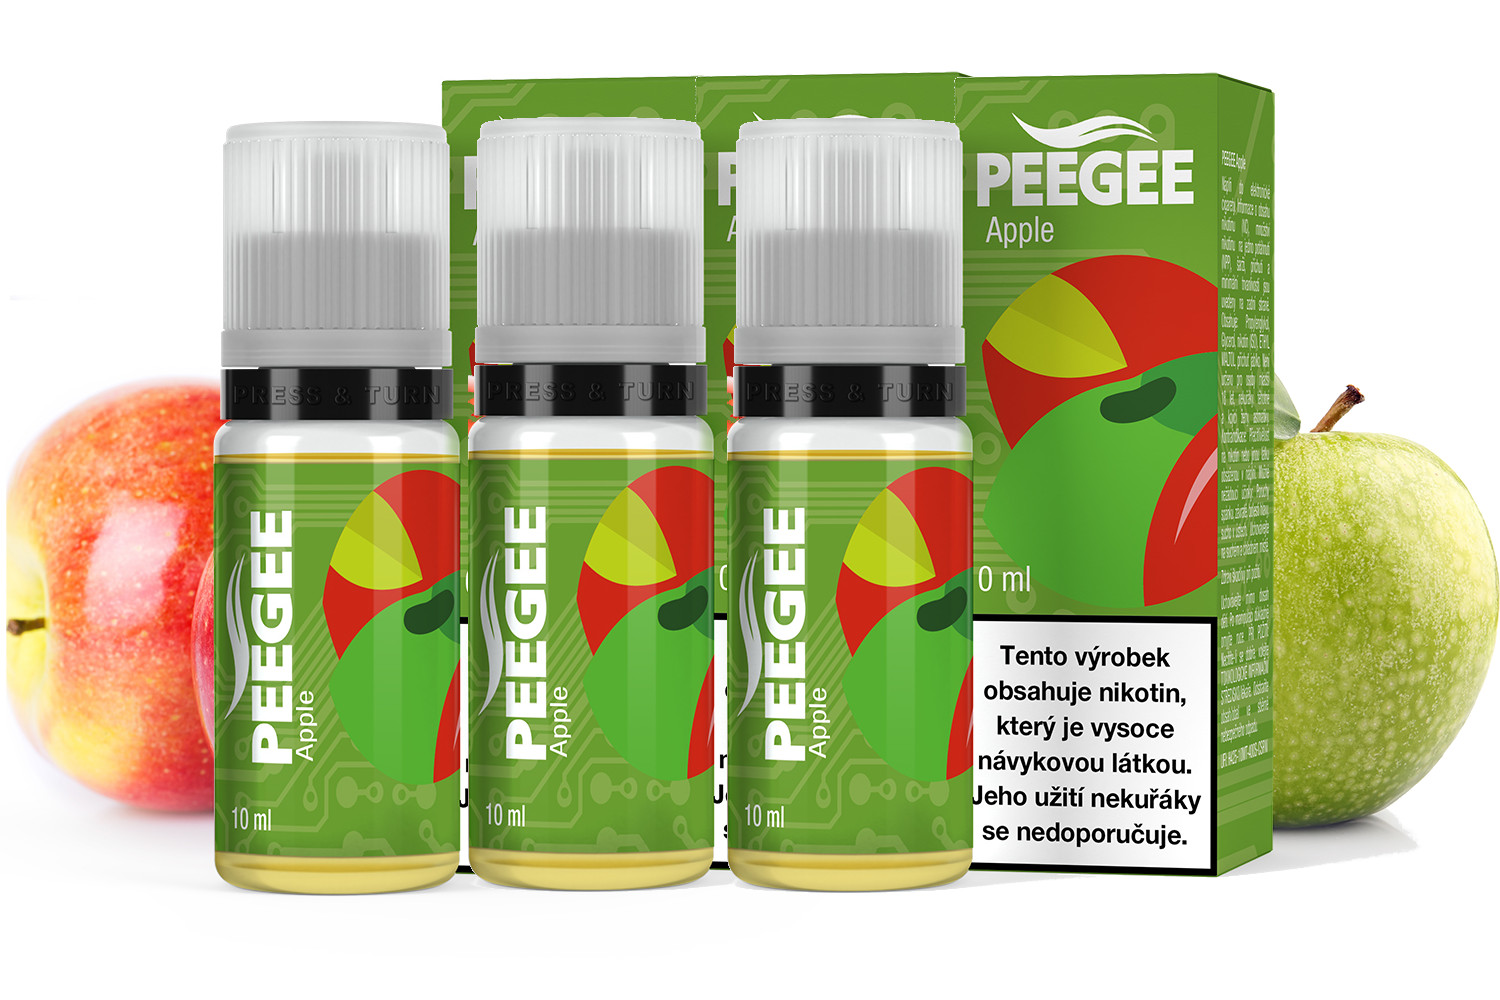 PEEGEE - Jablko (Apple) 3x10ml Obsah nikotinu: 6mg